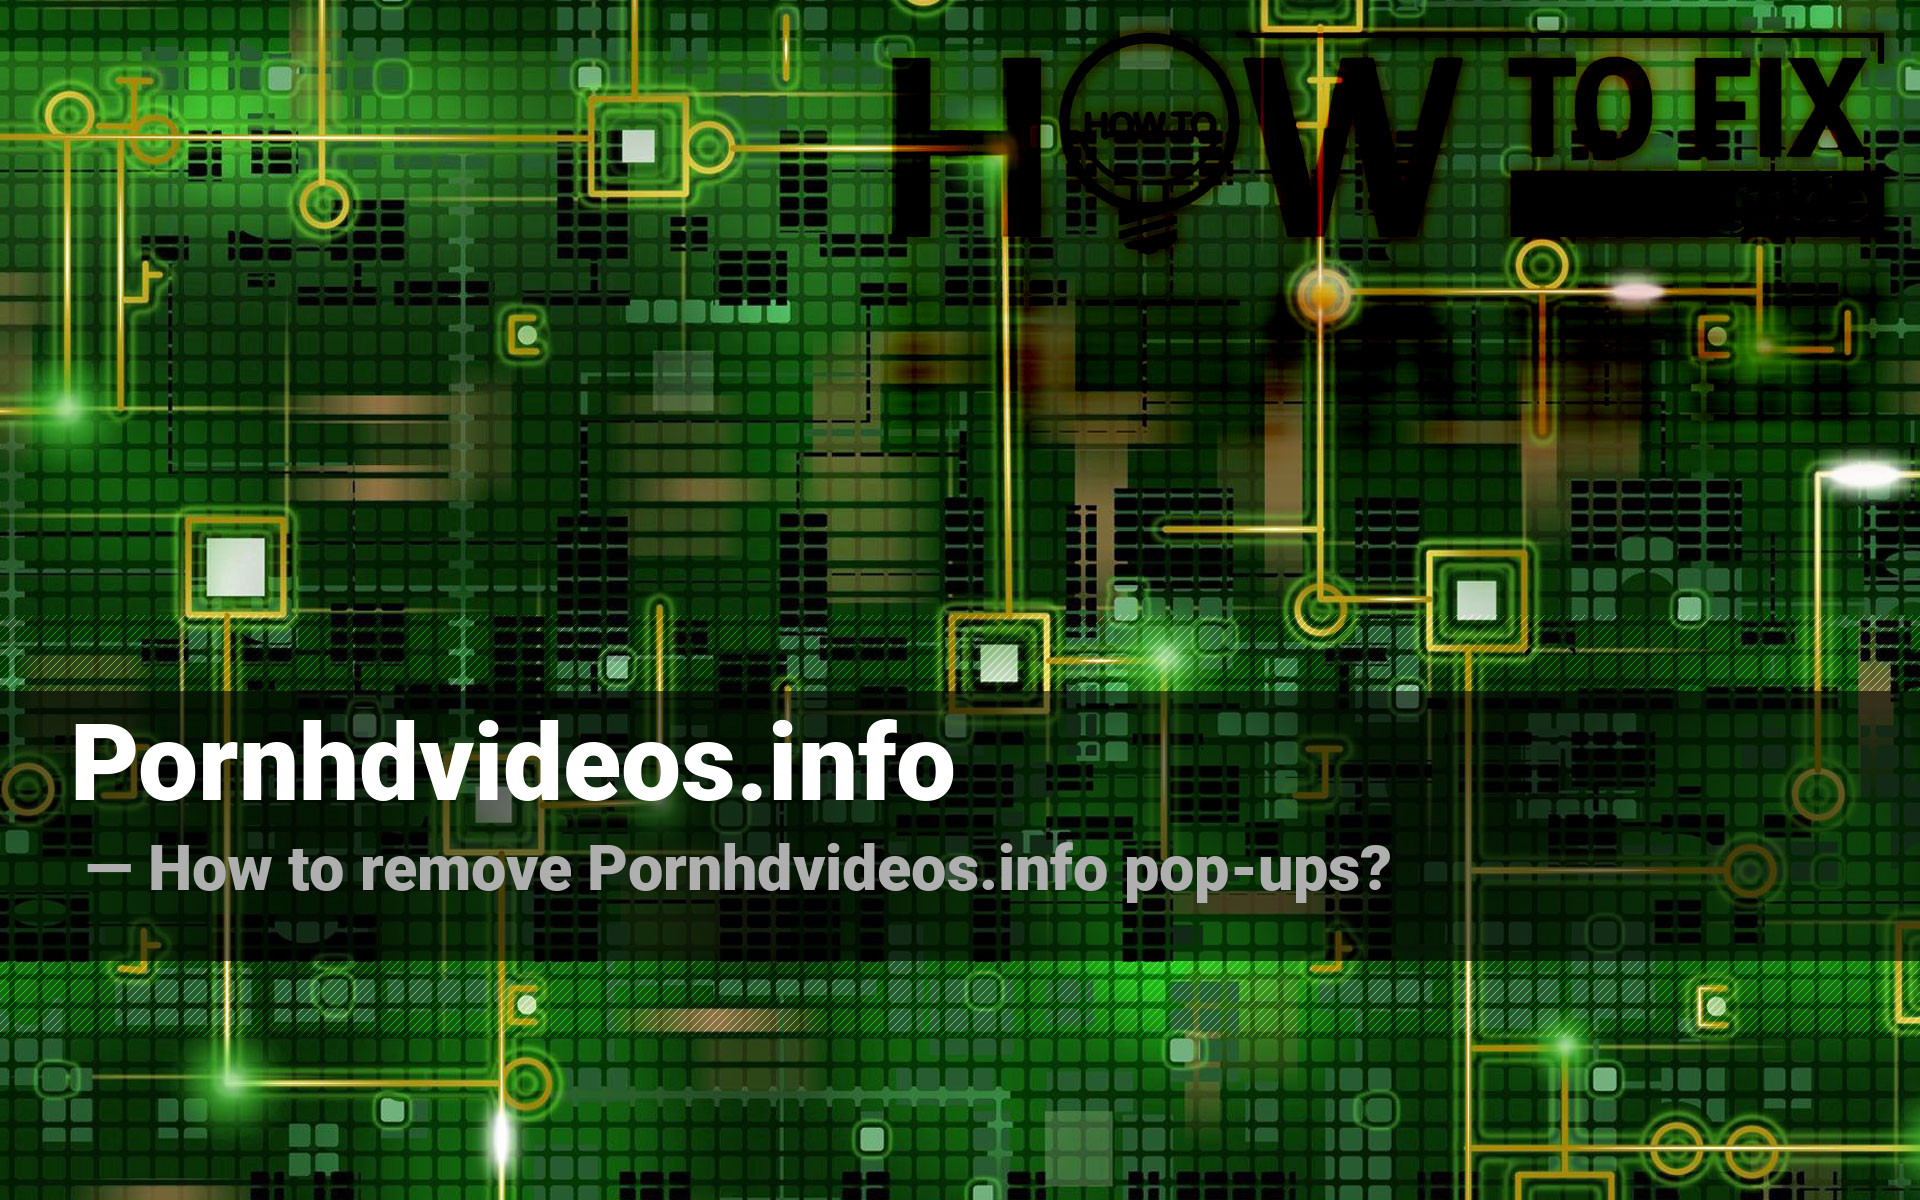 Pornhdvido - Remove PornHDVideos Ads Virus â€” How To Fix Guide